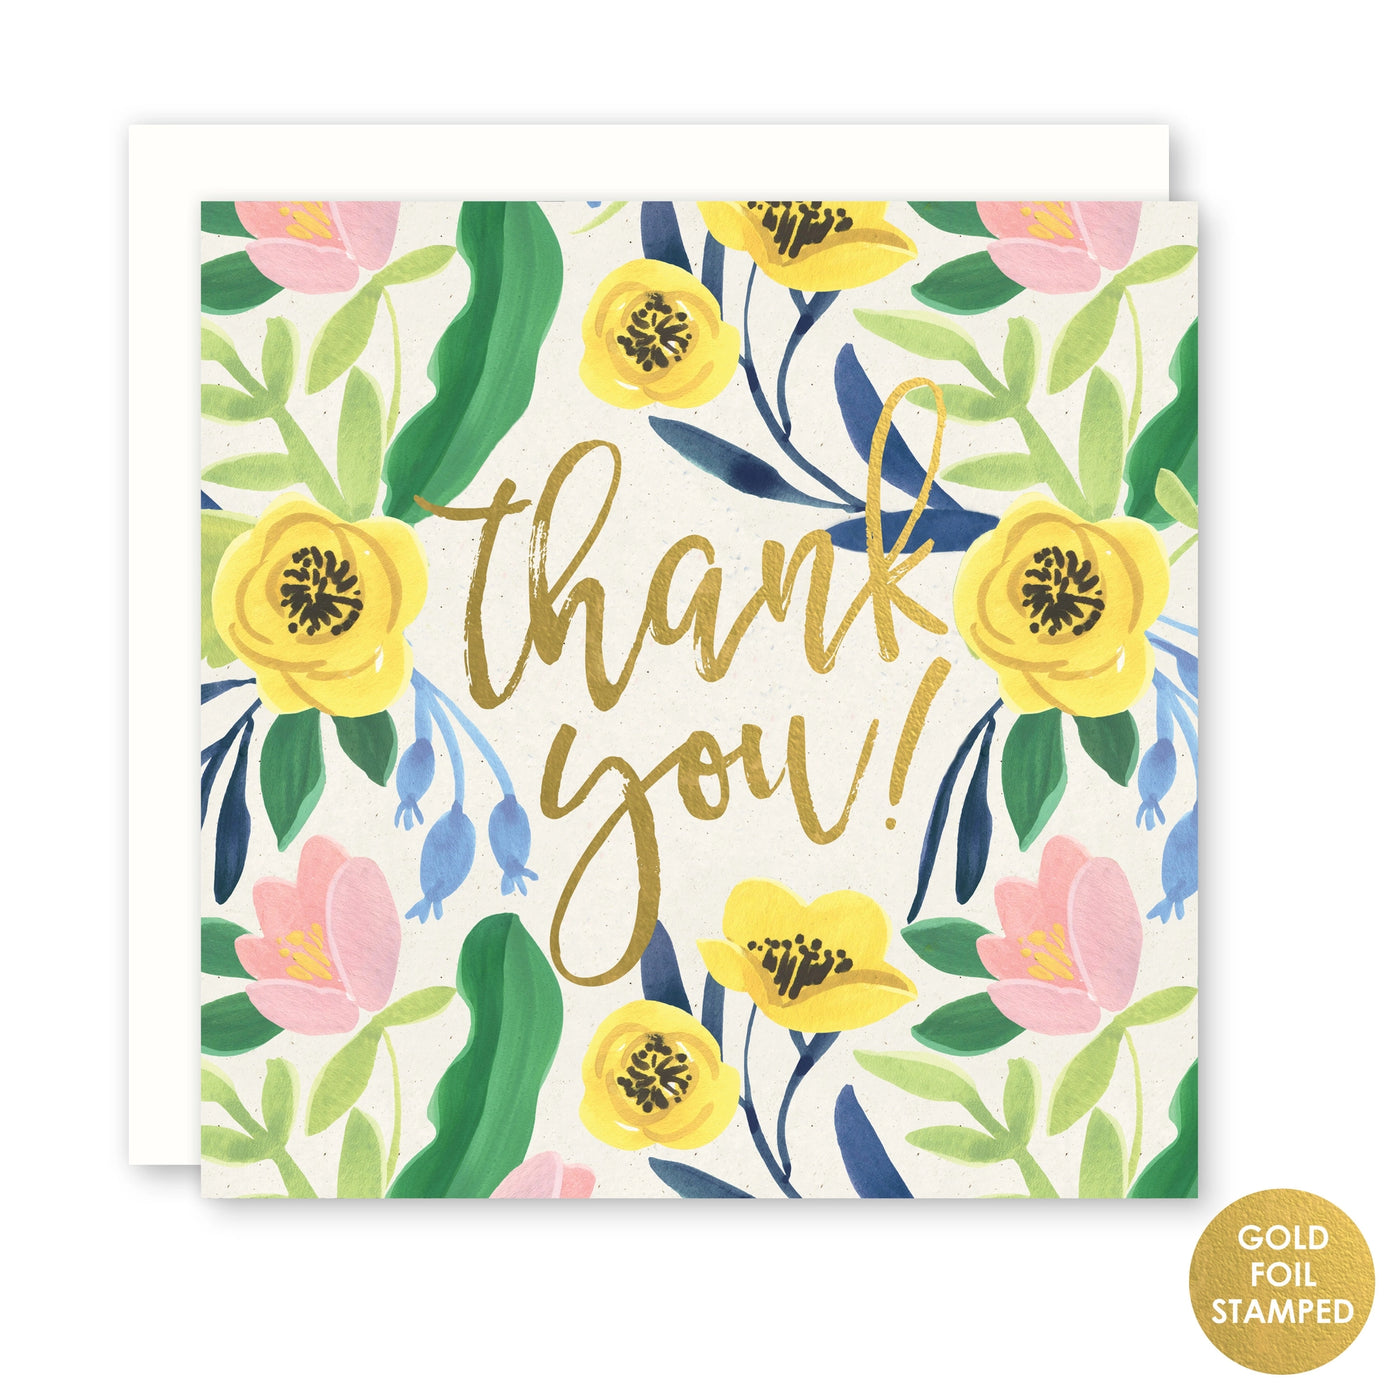 Thank You - Florals & Gold Foil